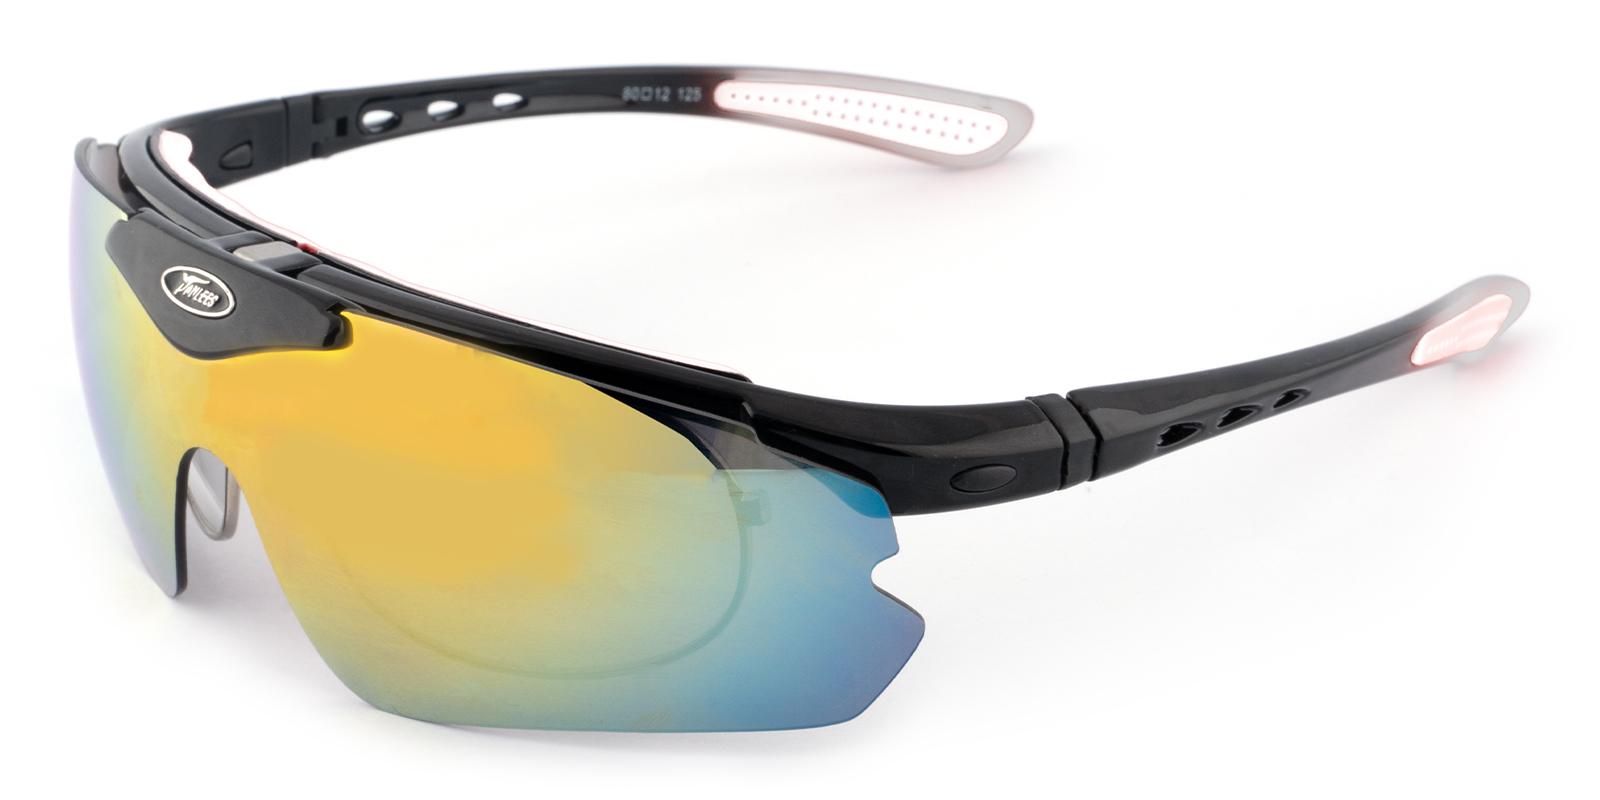 Belarus White Plastic NosePads , SportsGlasses Frames from ABBE Glasses